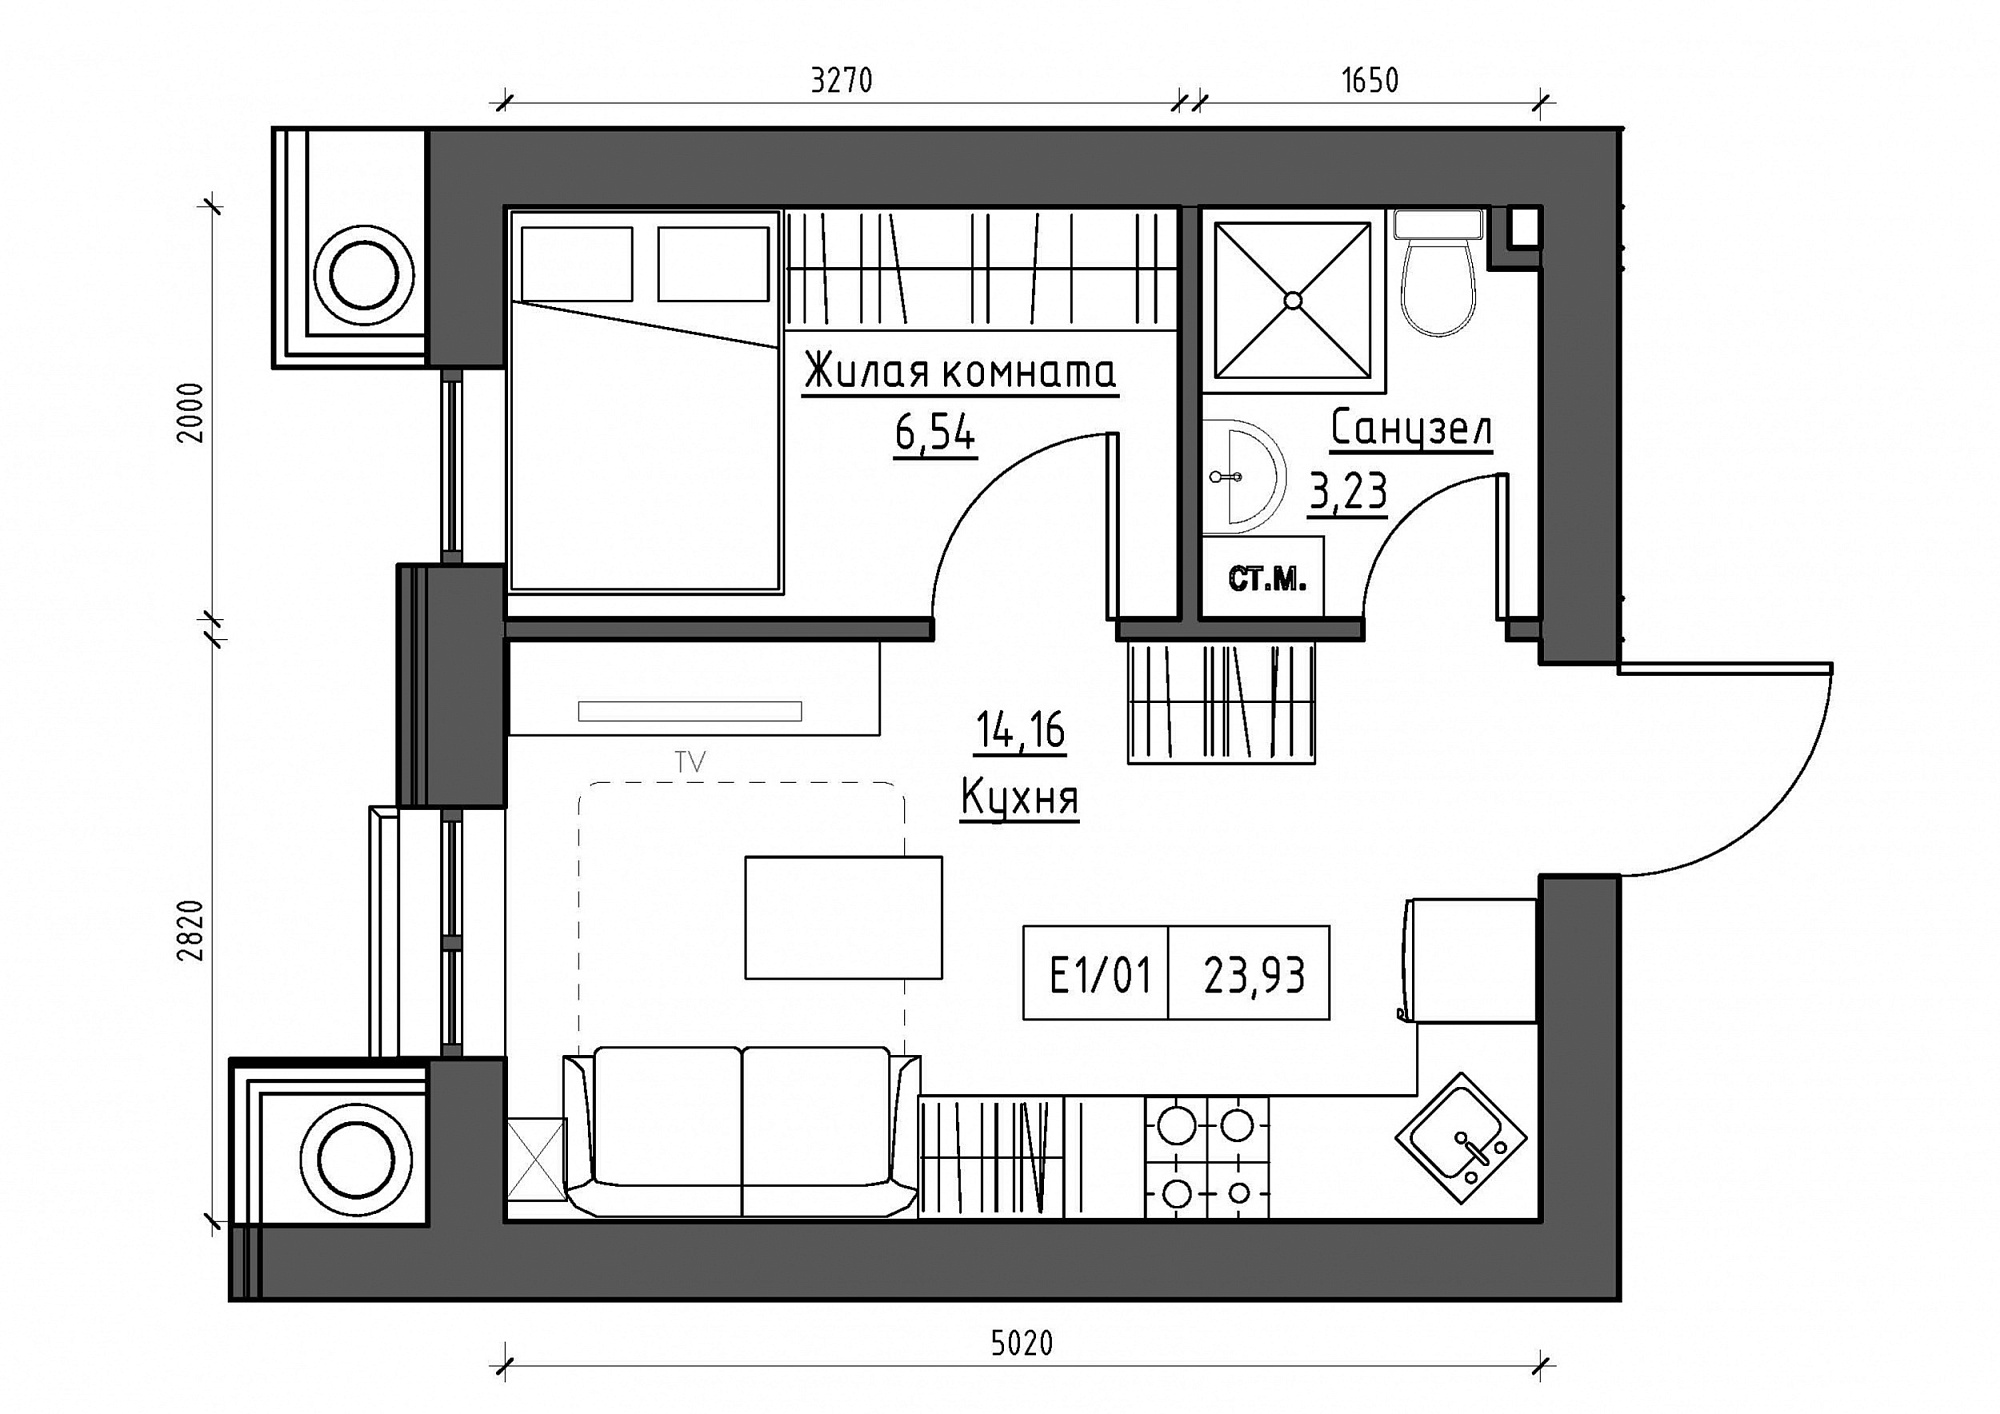 Планировка 1-к квартира площей 23.93м2, KS-012-03/0012.